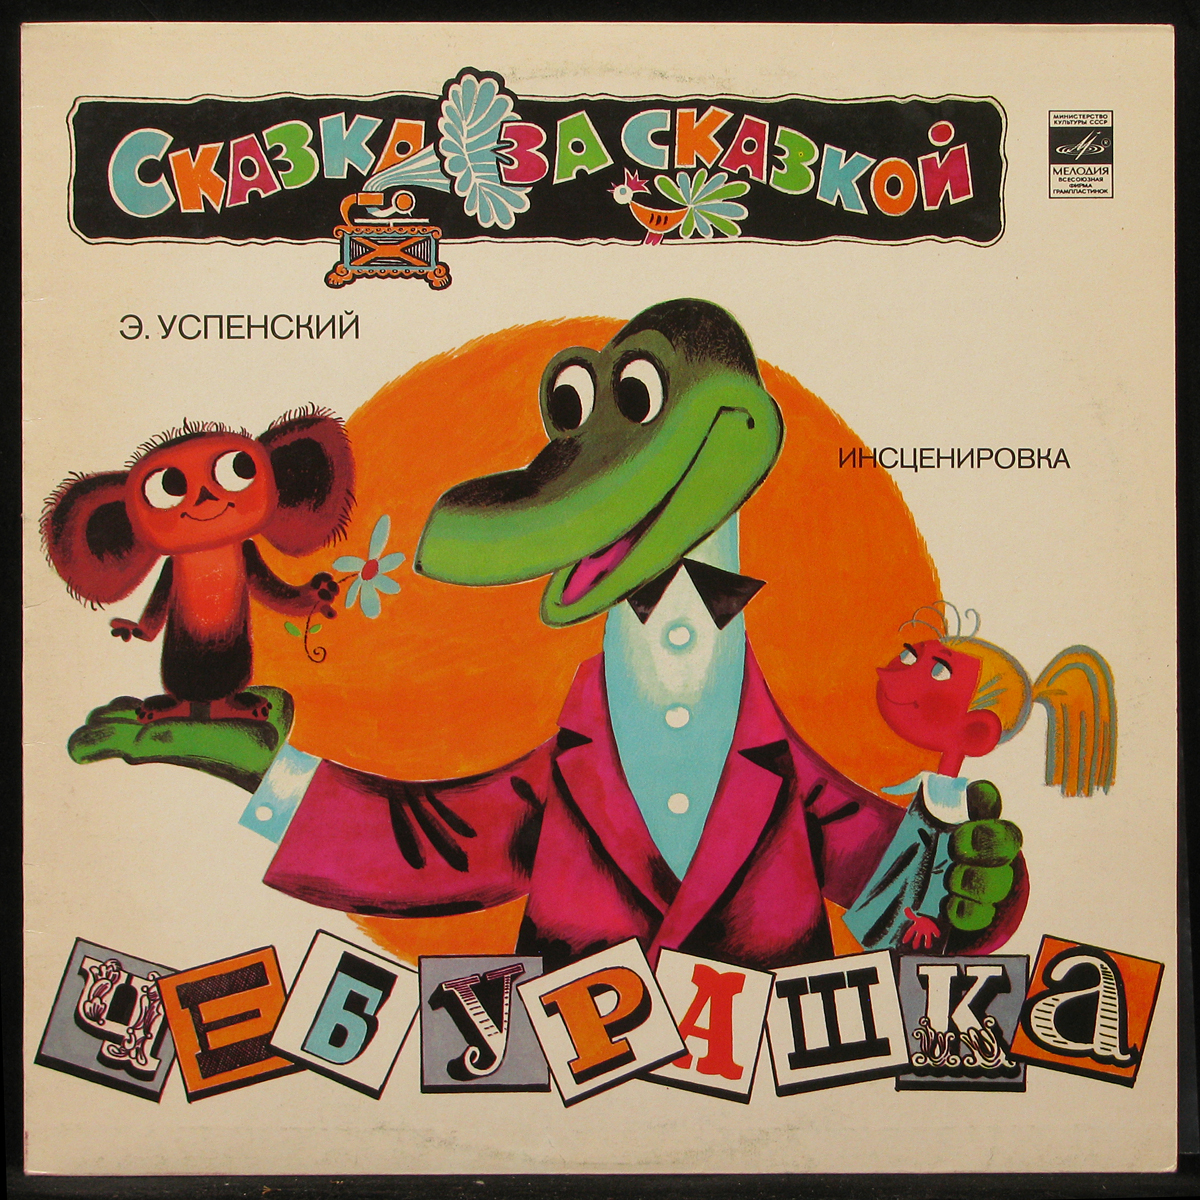 Детские песни из мультфильмов чебурашки. Успенский крокодил Гена 1966.